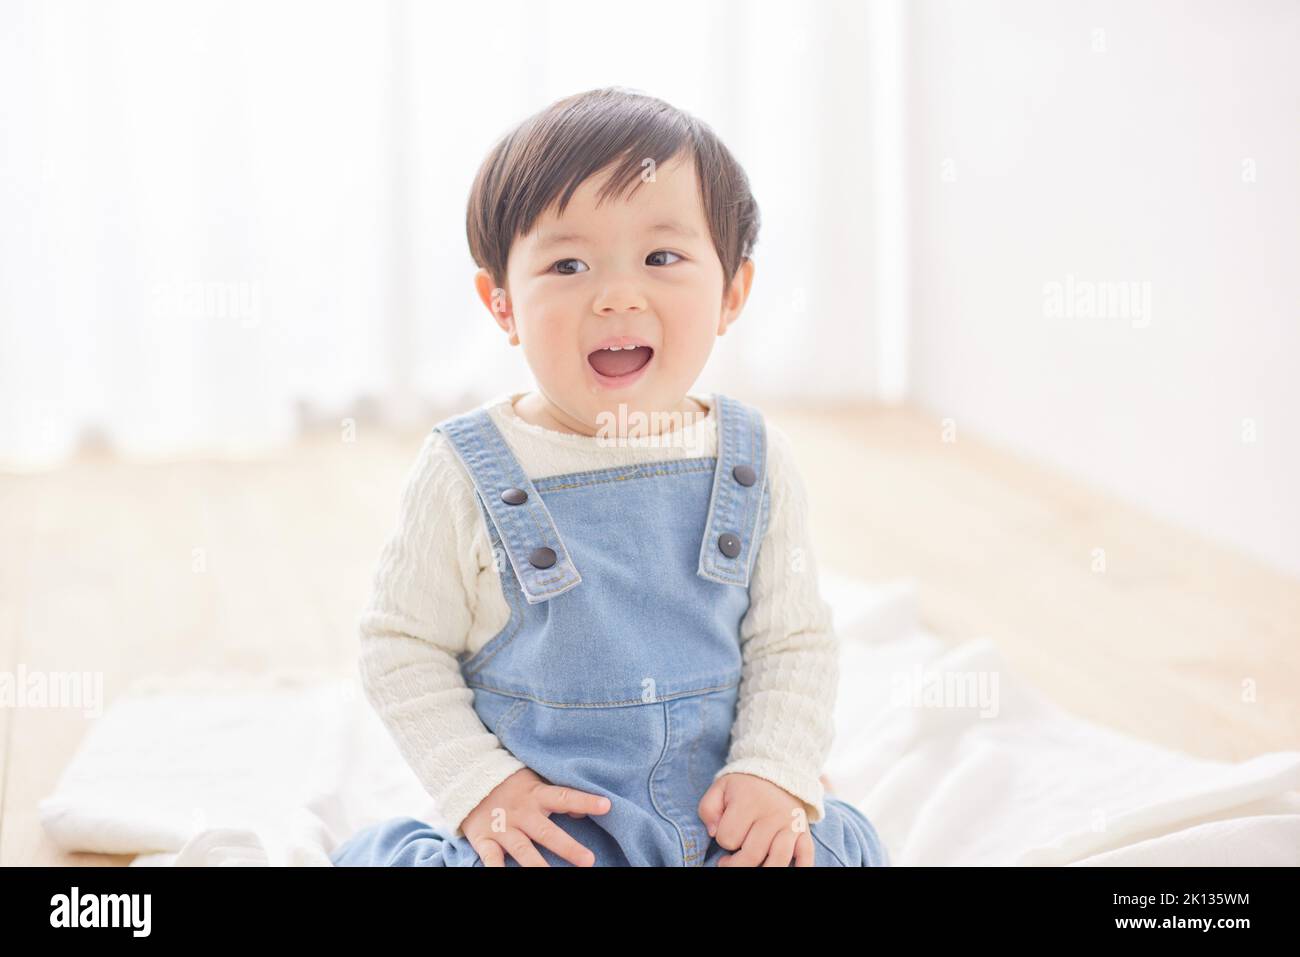 Japanese newborn Stock Photo